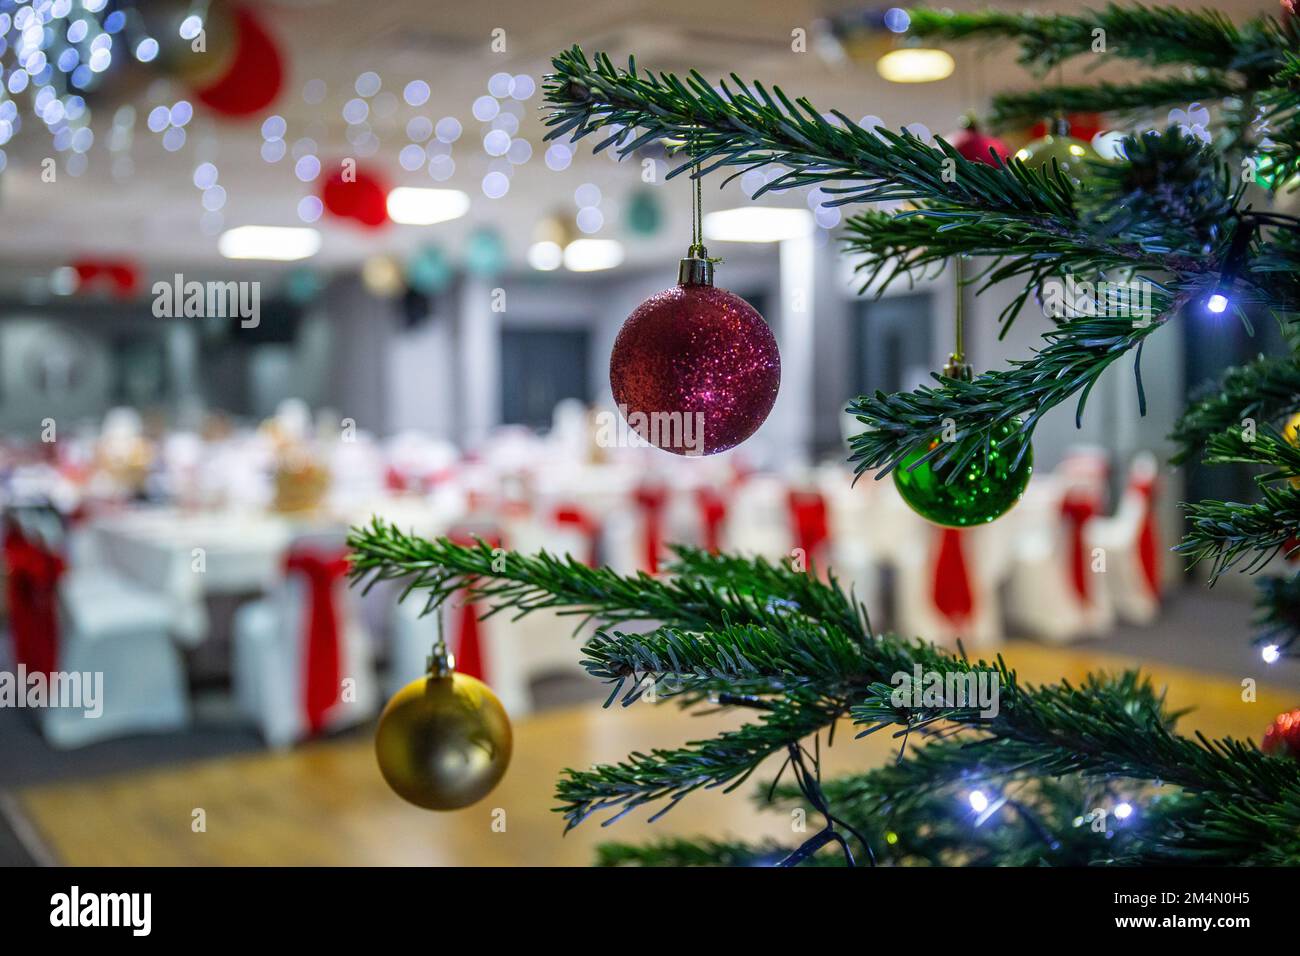 Sapin de Noël dans la salle de réception prévue pour les fêtes de Noël pendant la période des fêtes au Royaume-Uni Banque D'Images